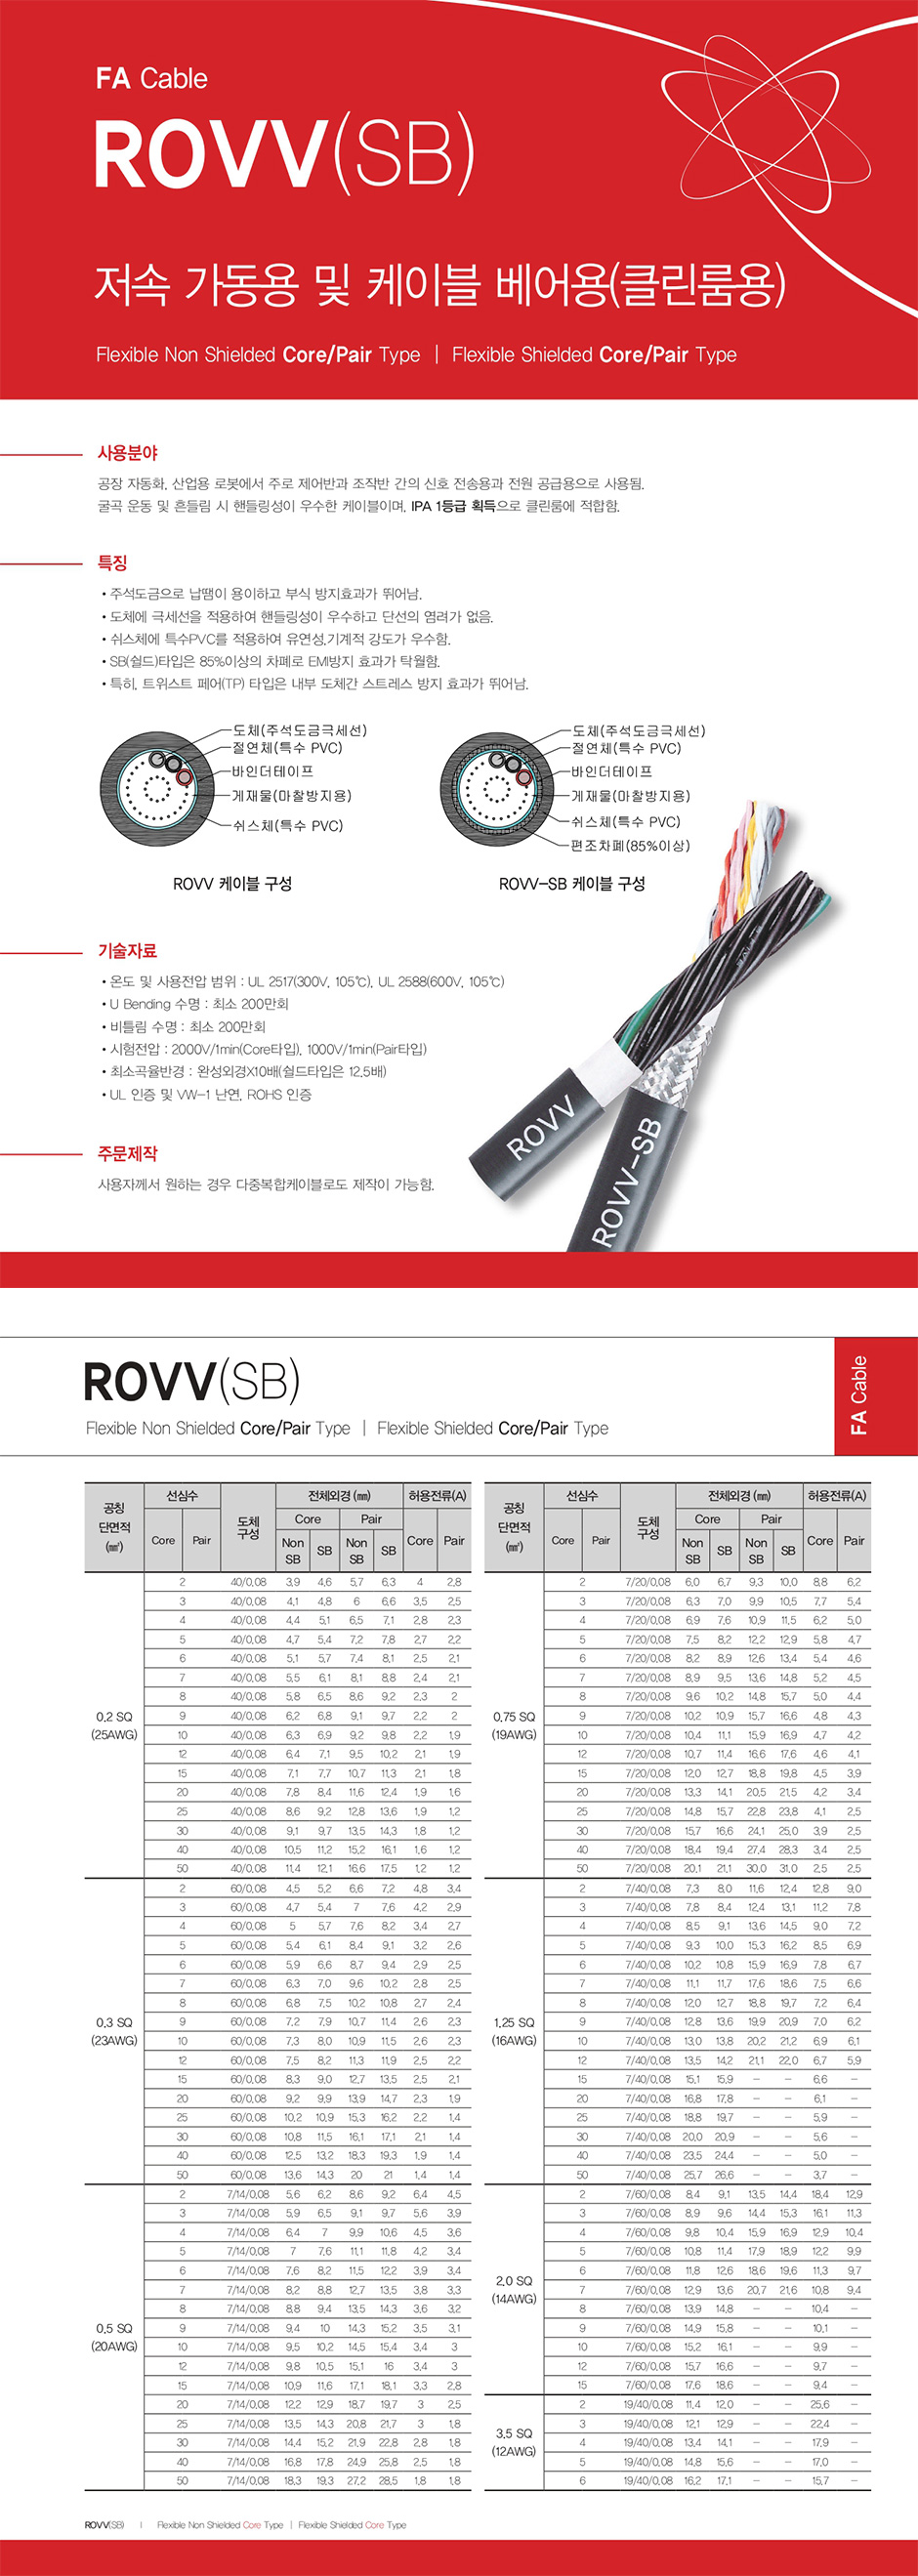 FA Cable : ROVV(SB)